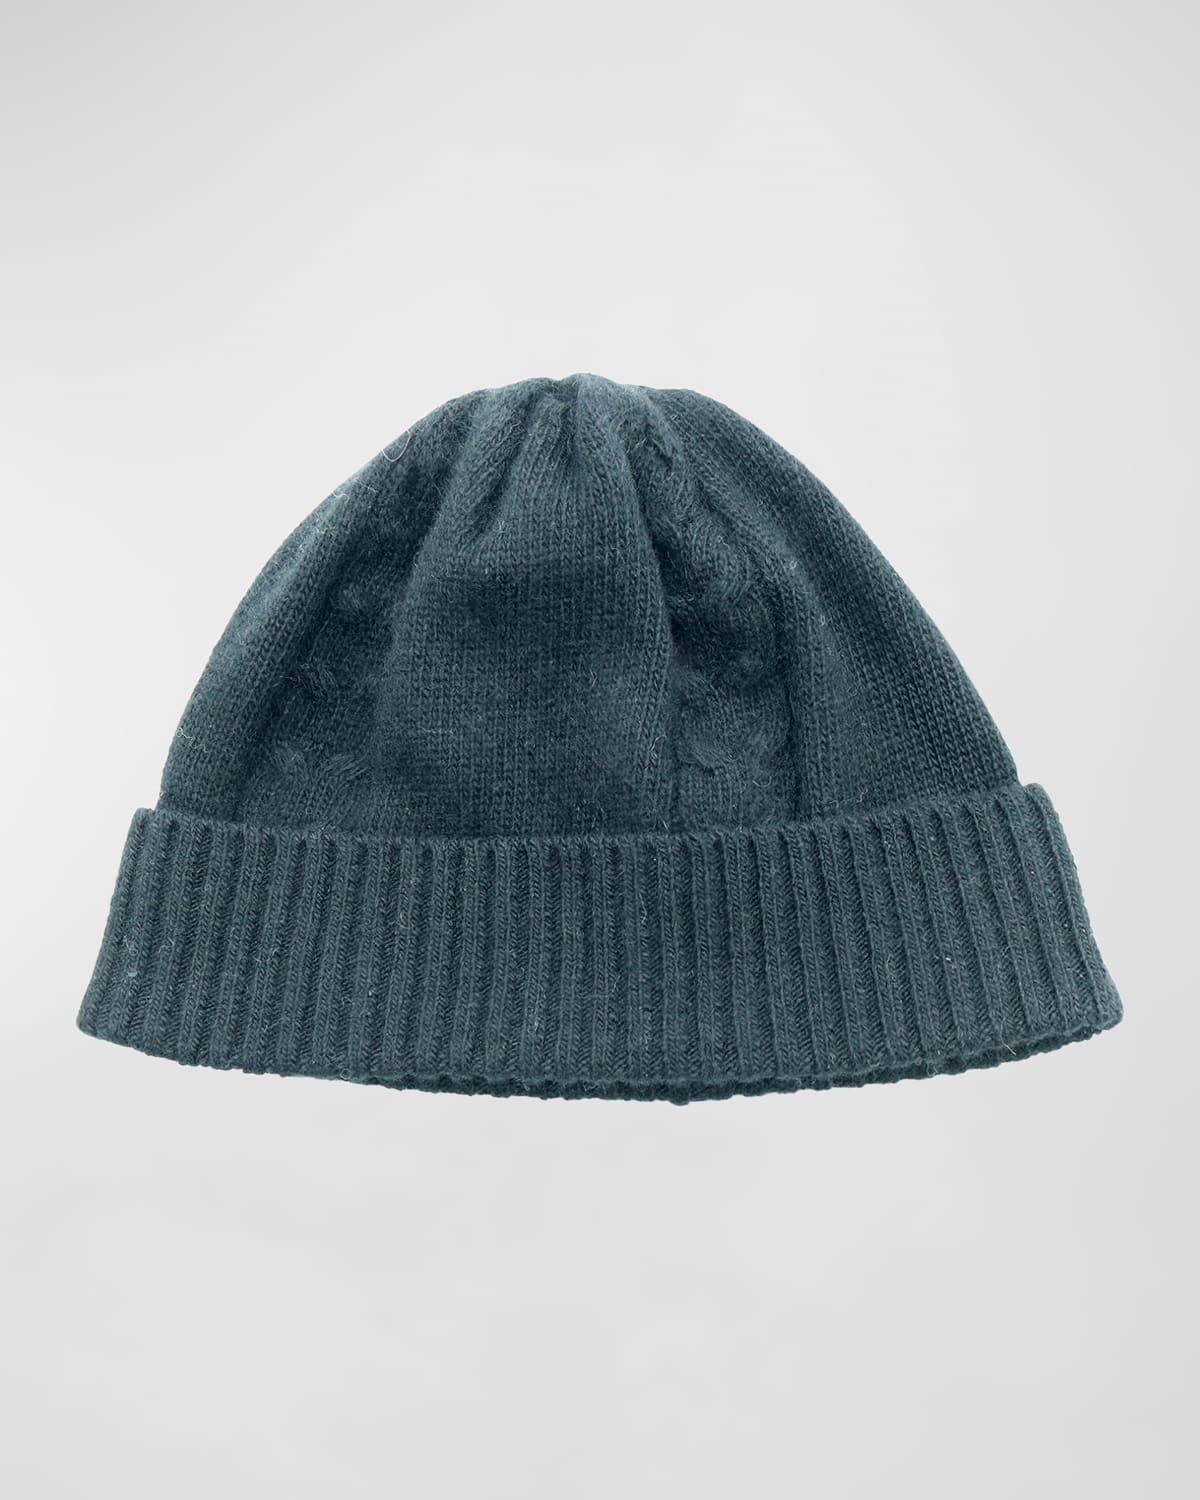 Men's Cable-Knit Beanie Hat